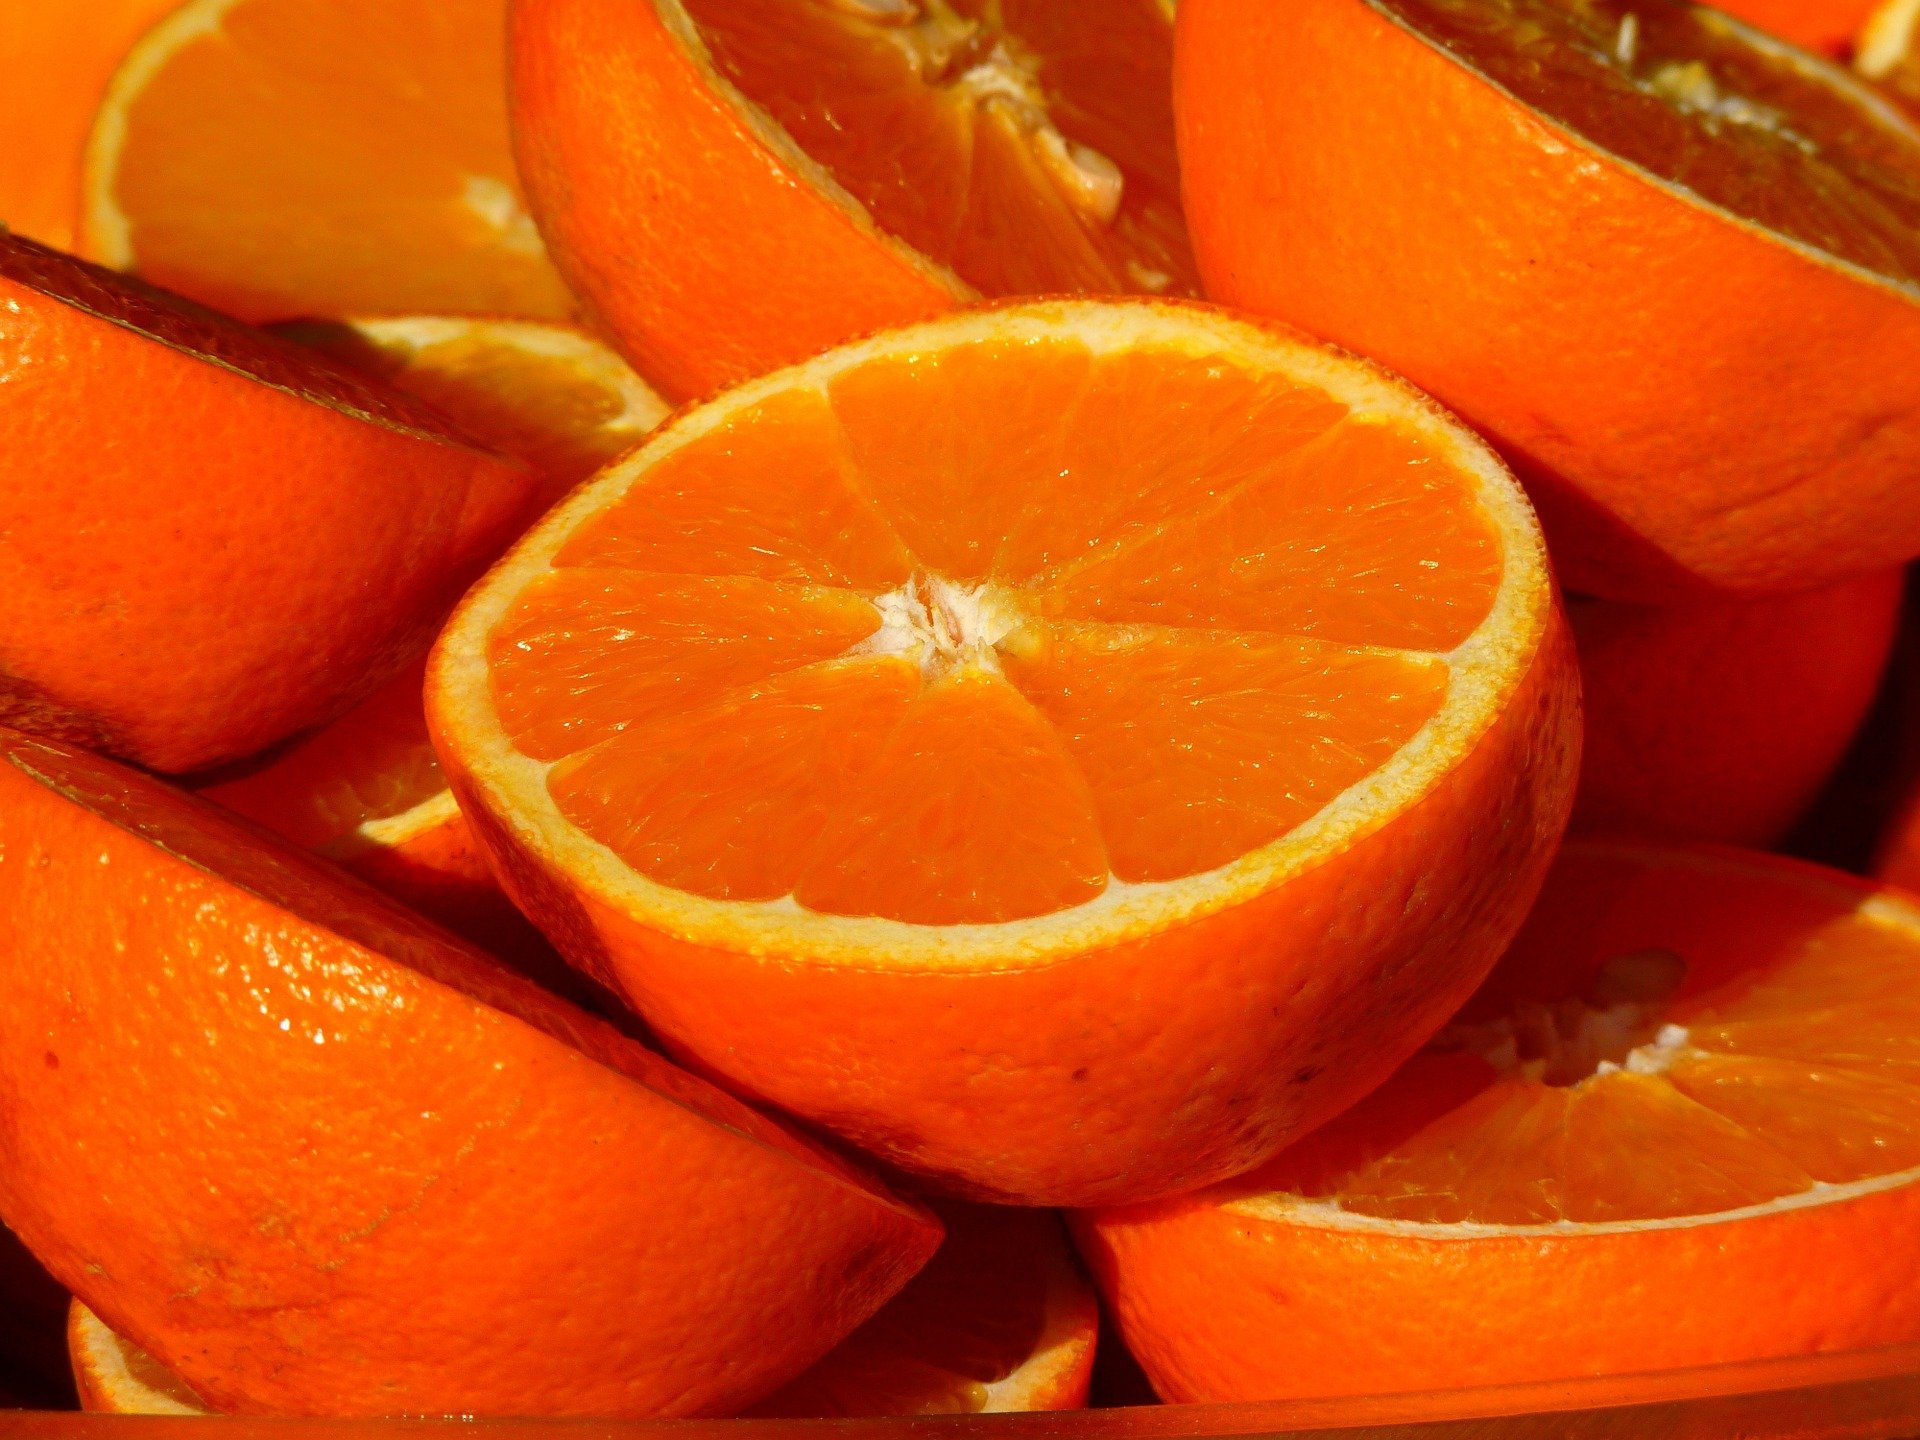 oranges 15046 1920